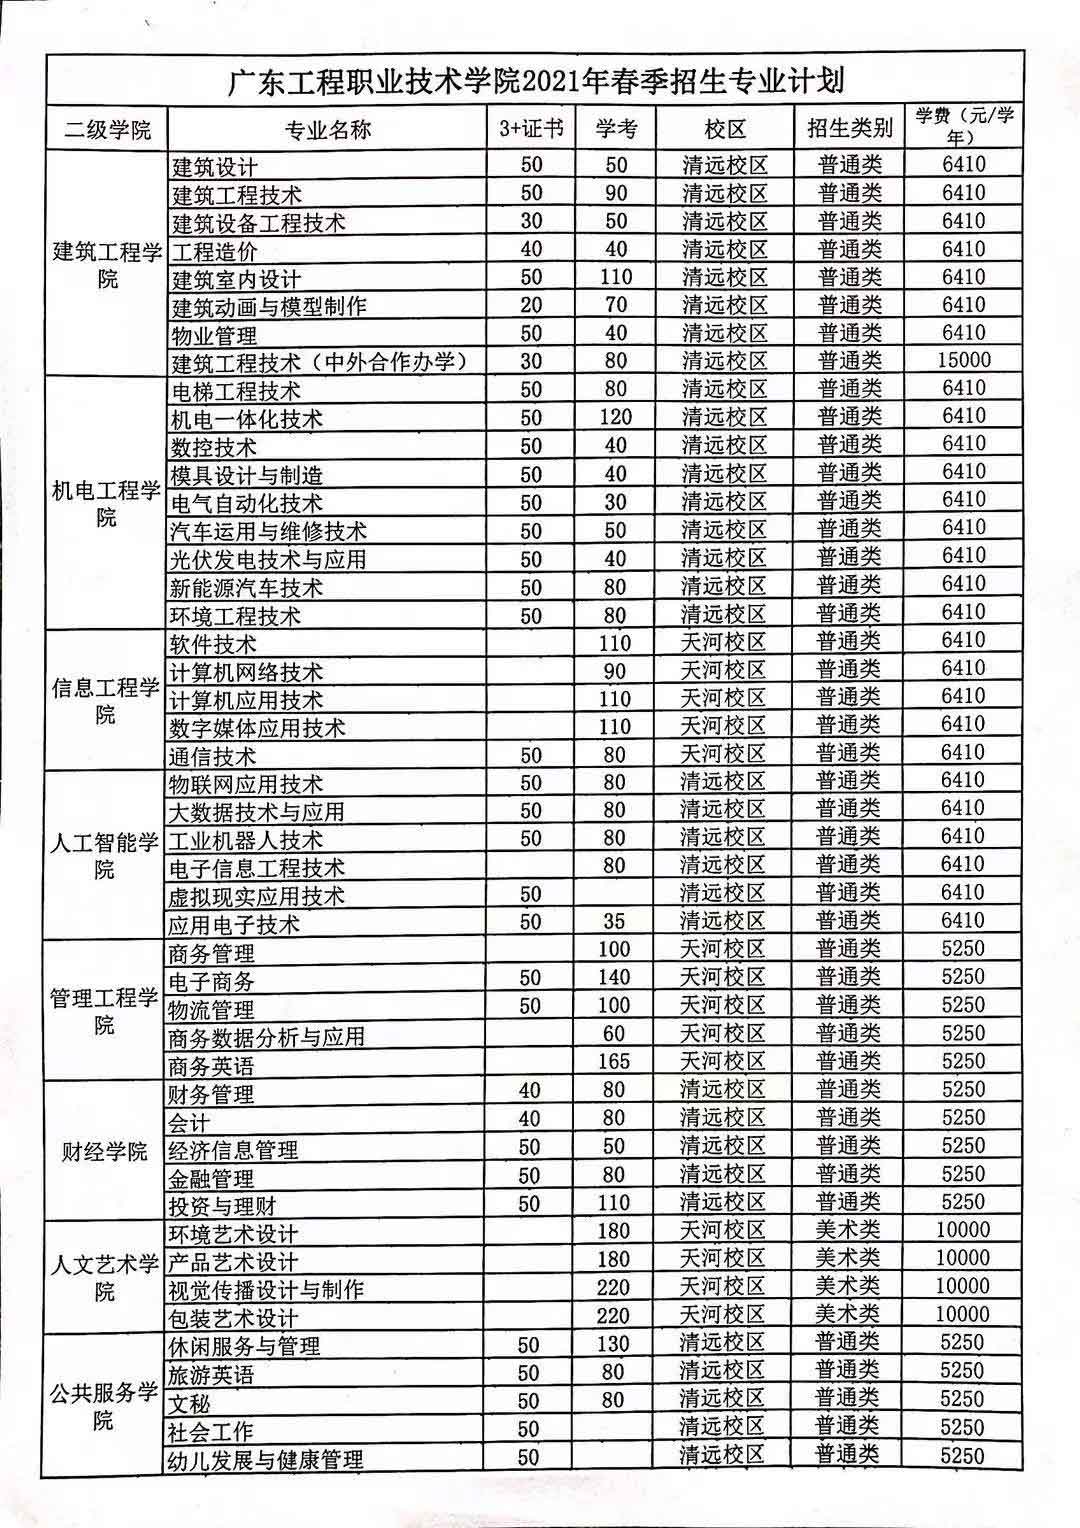 【院校介绍】广东工程职业技术学院(图2)